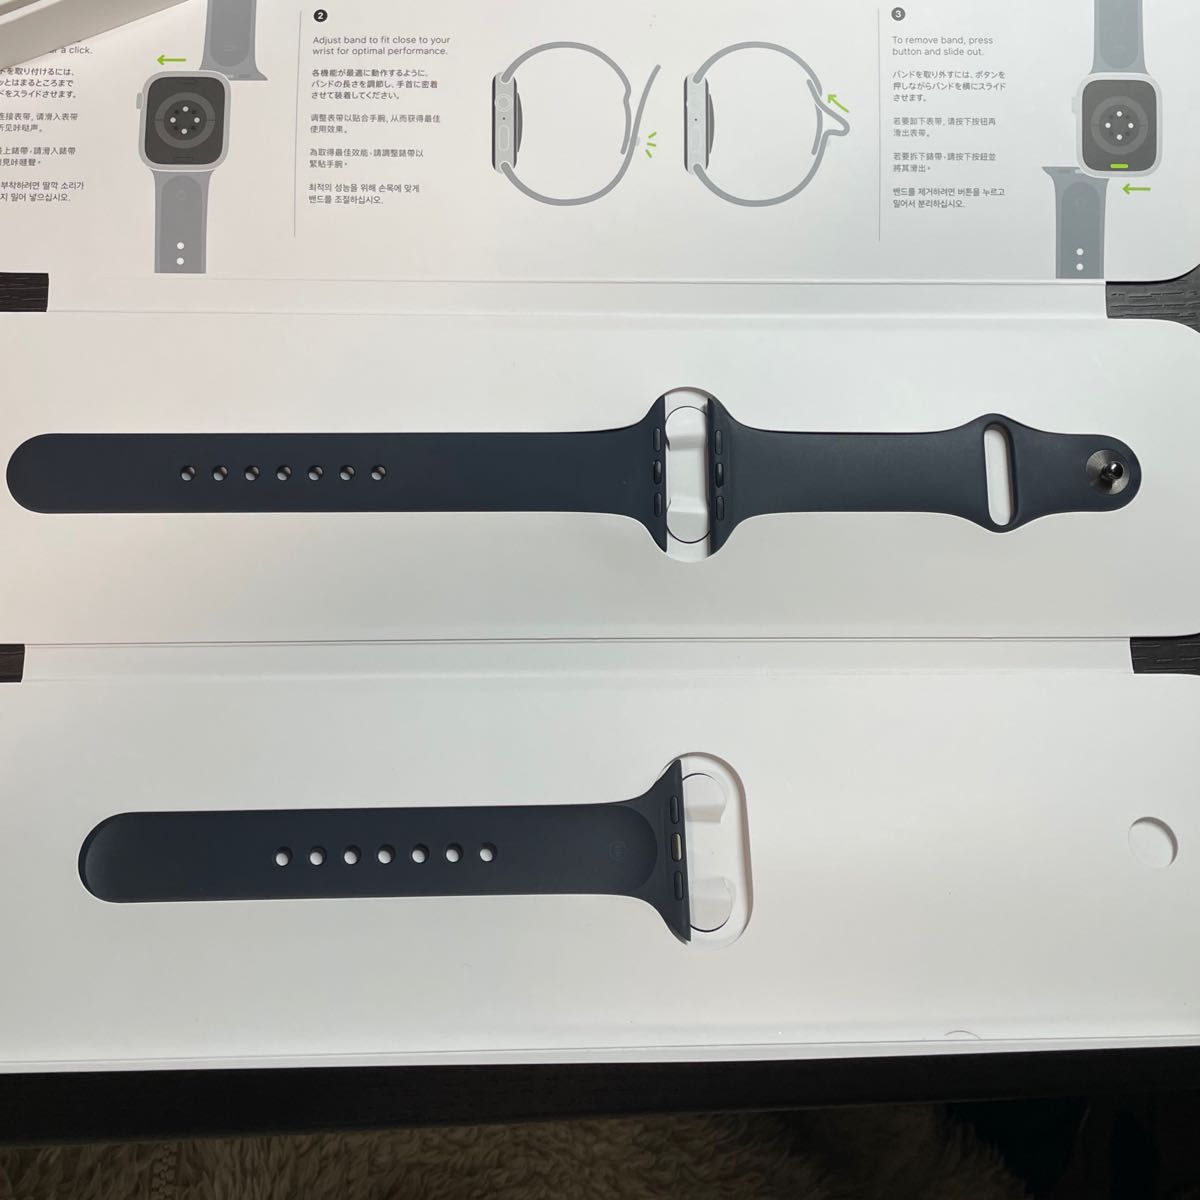 Apple Watch SE 第1世代 (GPSモデル) - 2020 - 44mm スペースグレイアルミニウムケース